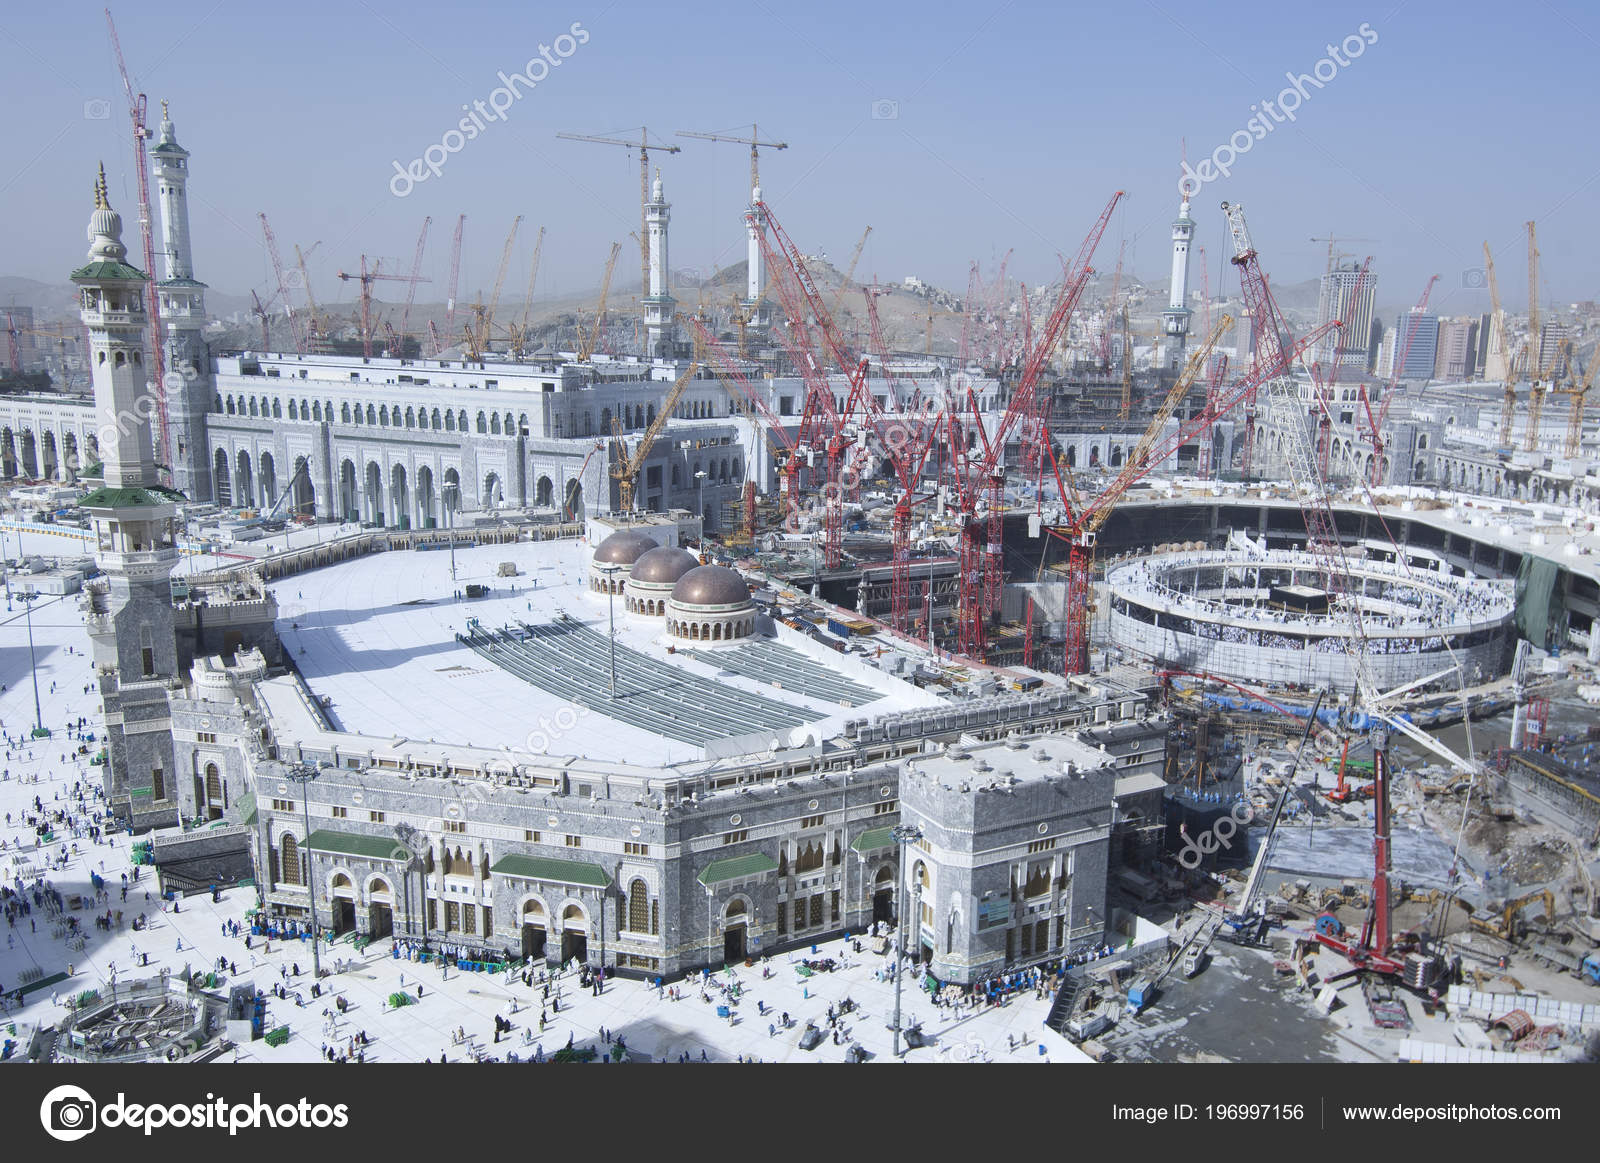 depositphotos_196997156-stock-photo-construction-masjid-haram-kaaba-mecca.jpg